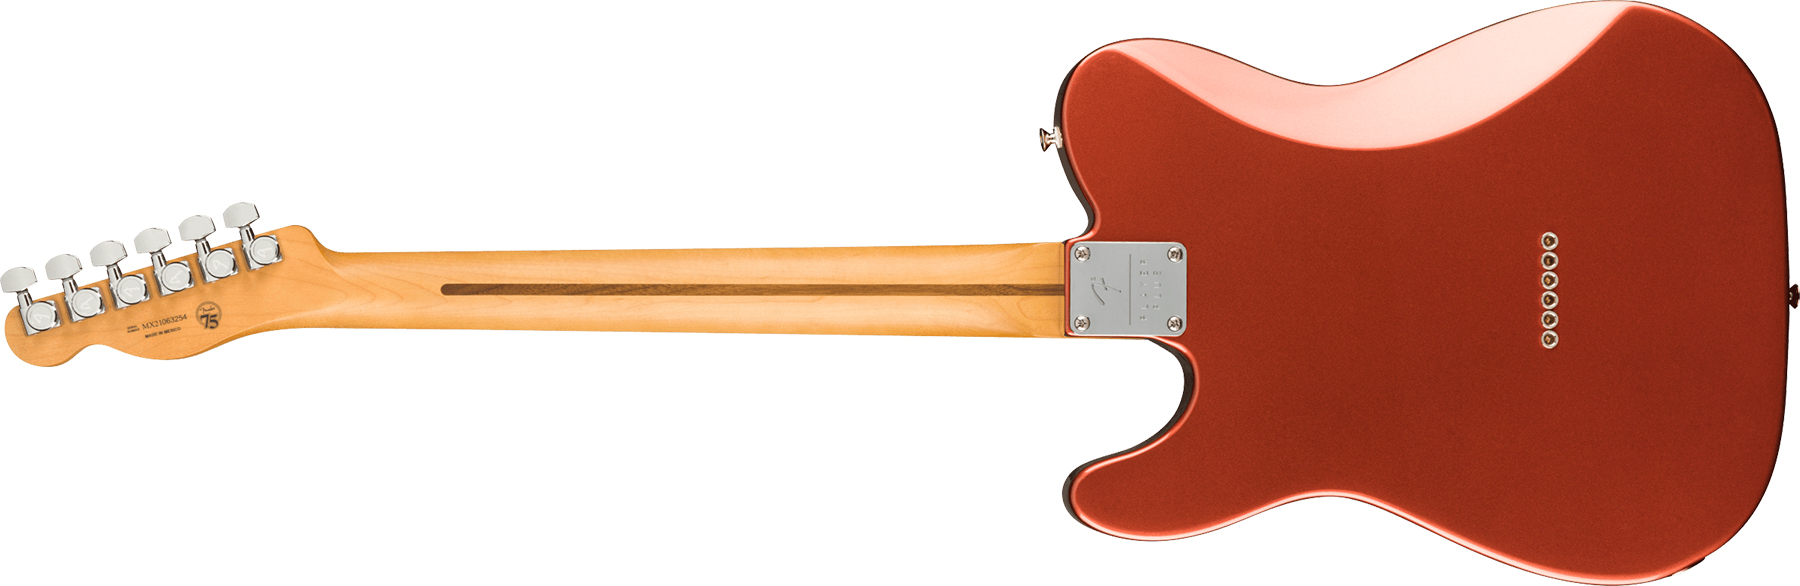 Fender Tele Player Plus Nashville Mex 3s Ht Pf - Aged Candy Apple Red - Guitare Électrique Forme Tel - Variation 1